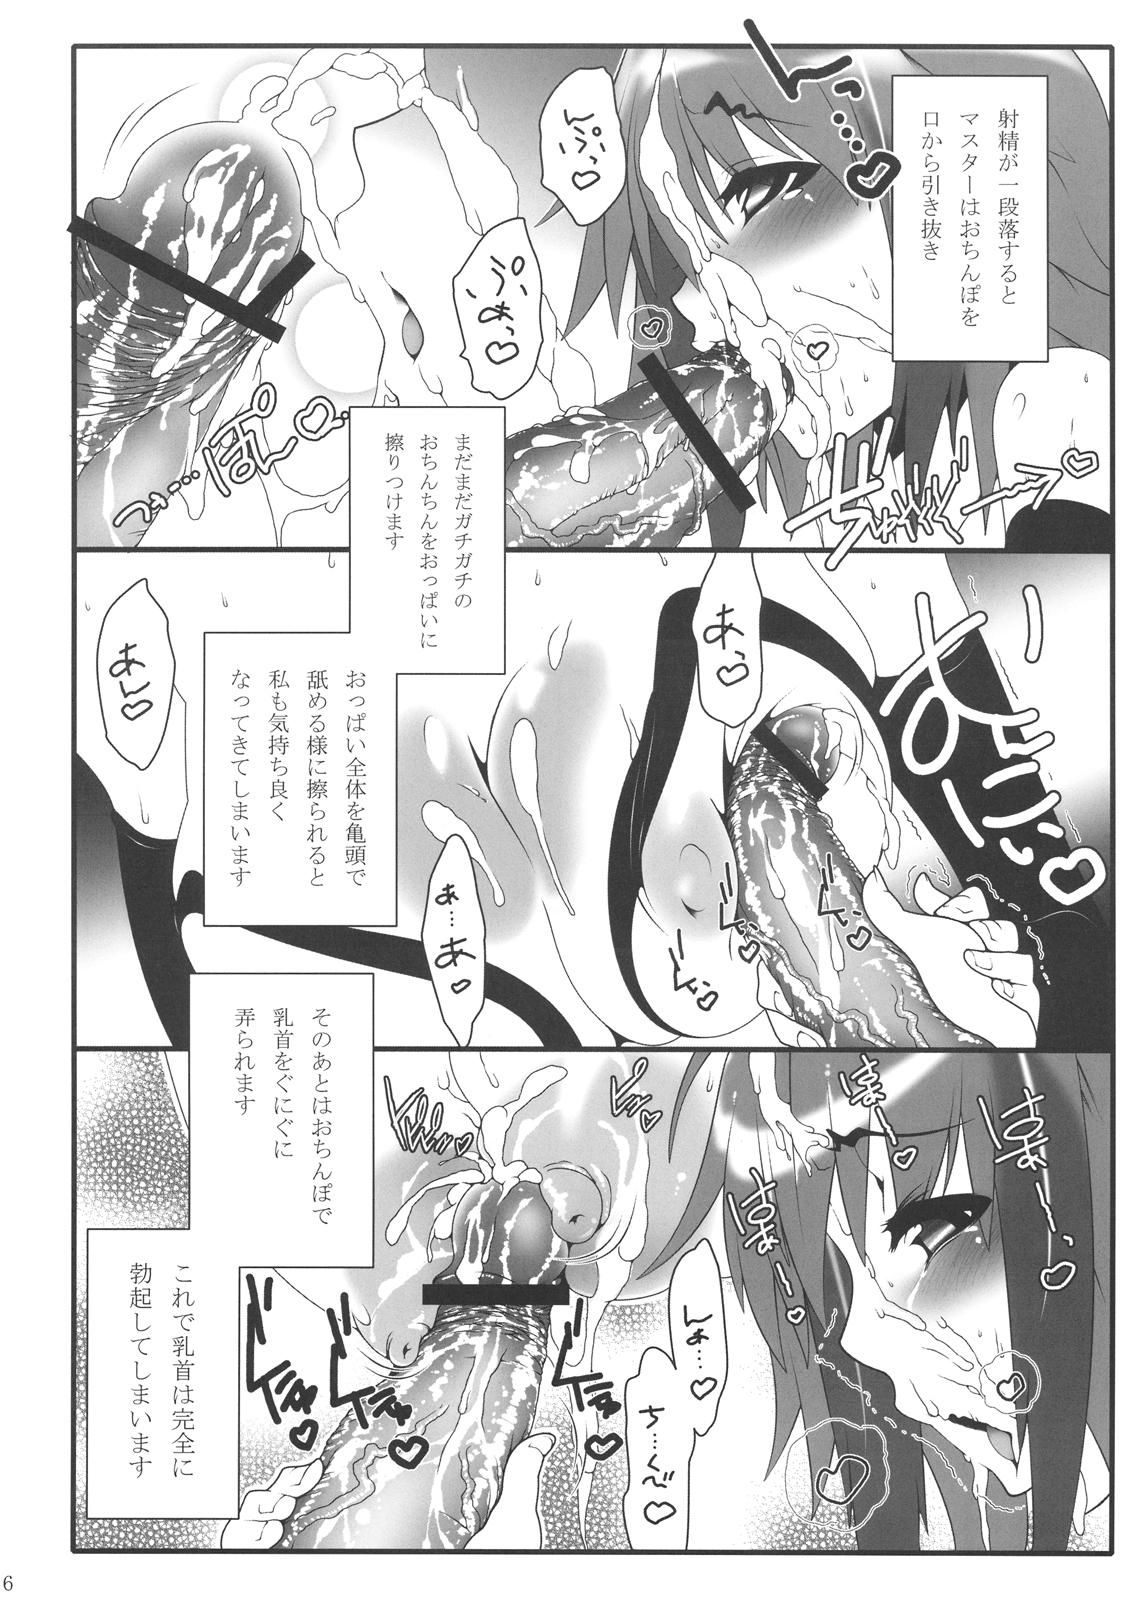 Hard Sex Ikaros-san to. - Sora no otoshimono Shemale - Page 6